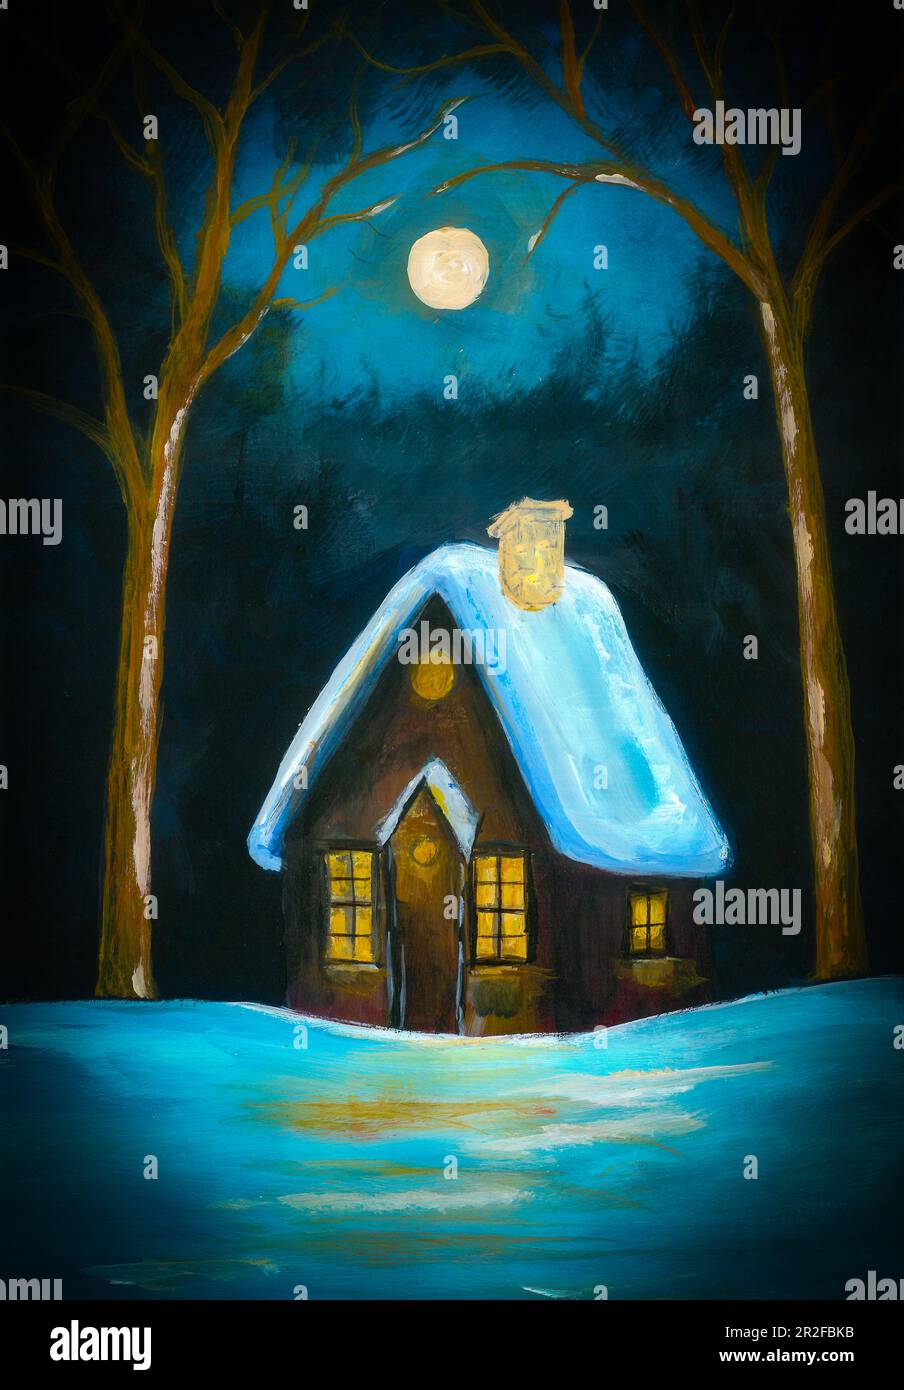 Jolie scène de chute de neige en plein air. maison de campagne avec lumière dans la fenêtre, lune et forêt sombre. Parfait pour les cartes de vœux de Noël, fond de noël. Banque D'Images